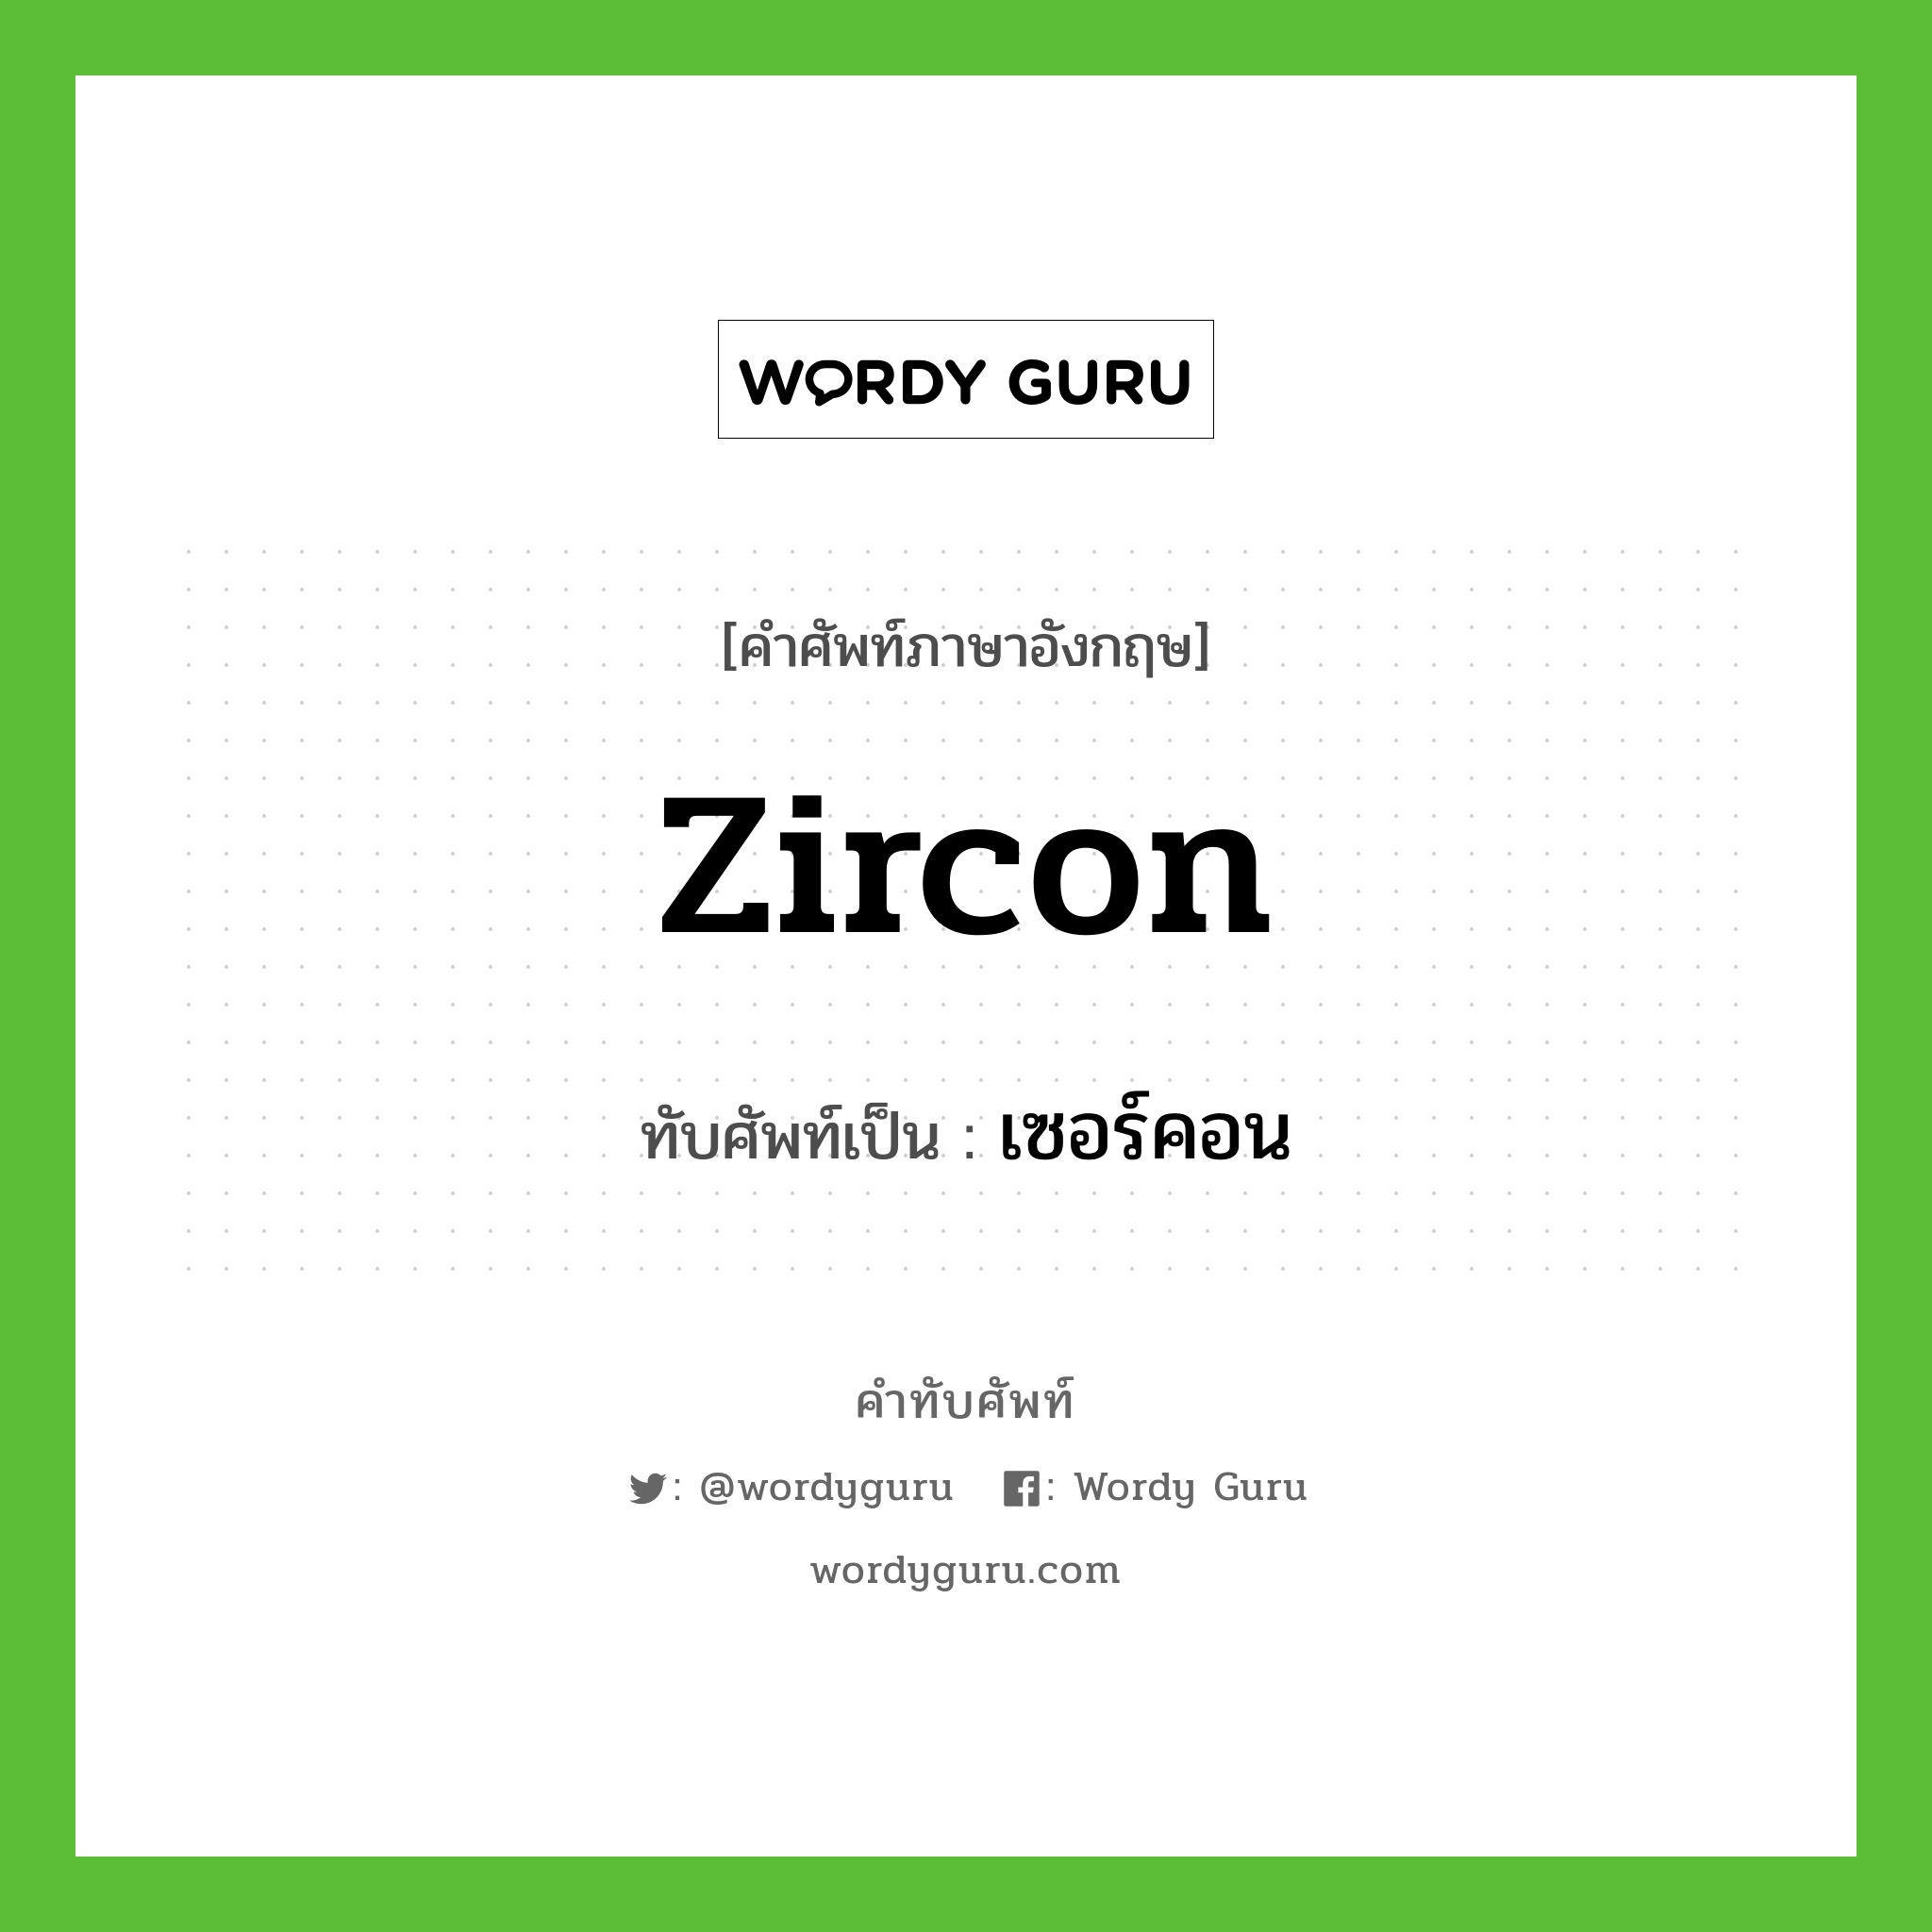 zircon เขียนเป็นคำไทยว่าอะไร?, คำศัพท์ภาษาอังกฤษ zircon ทับศัพท์เป็น เซอร์คอน